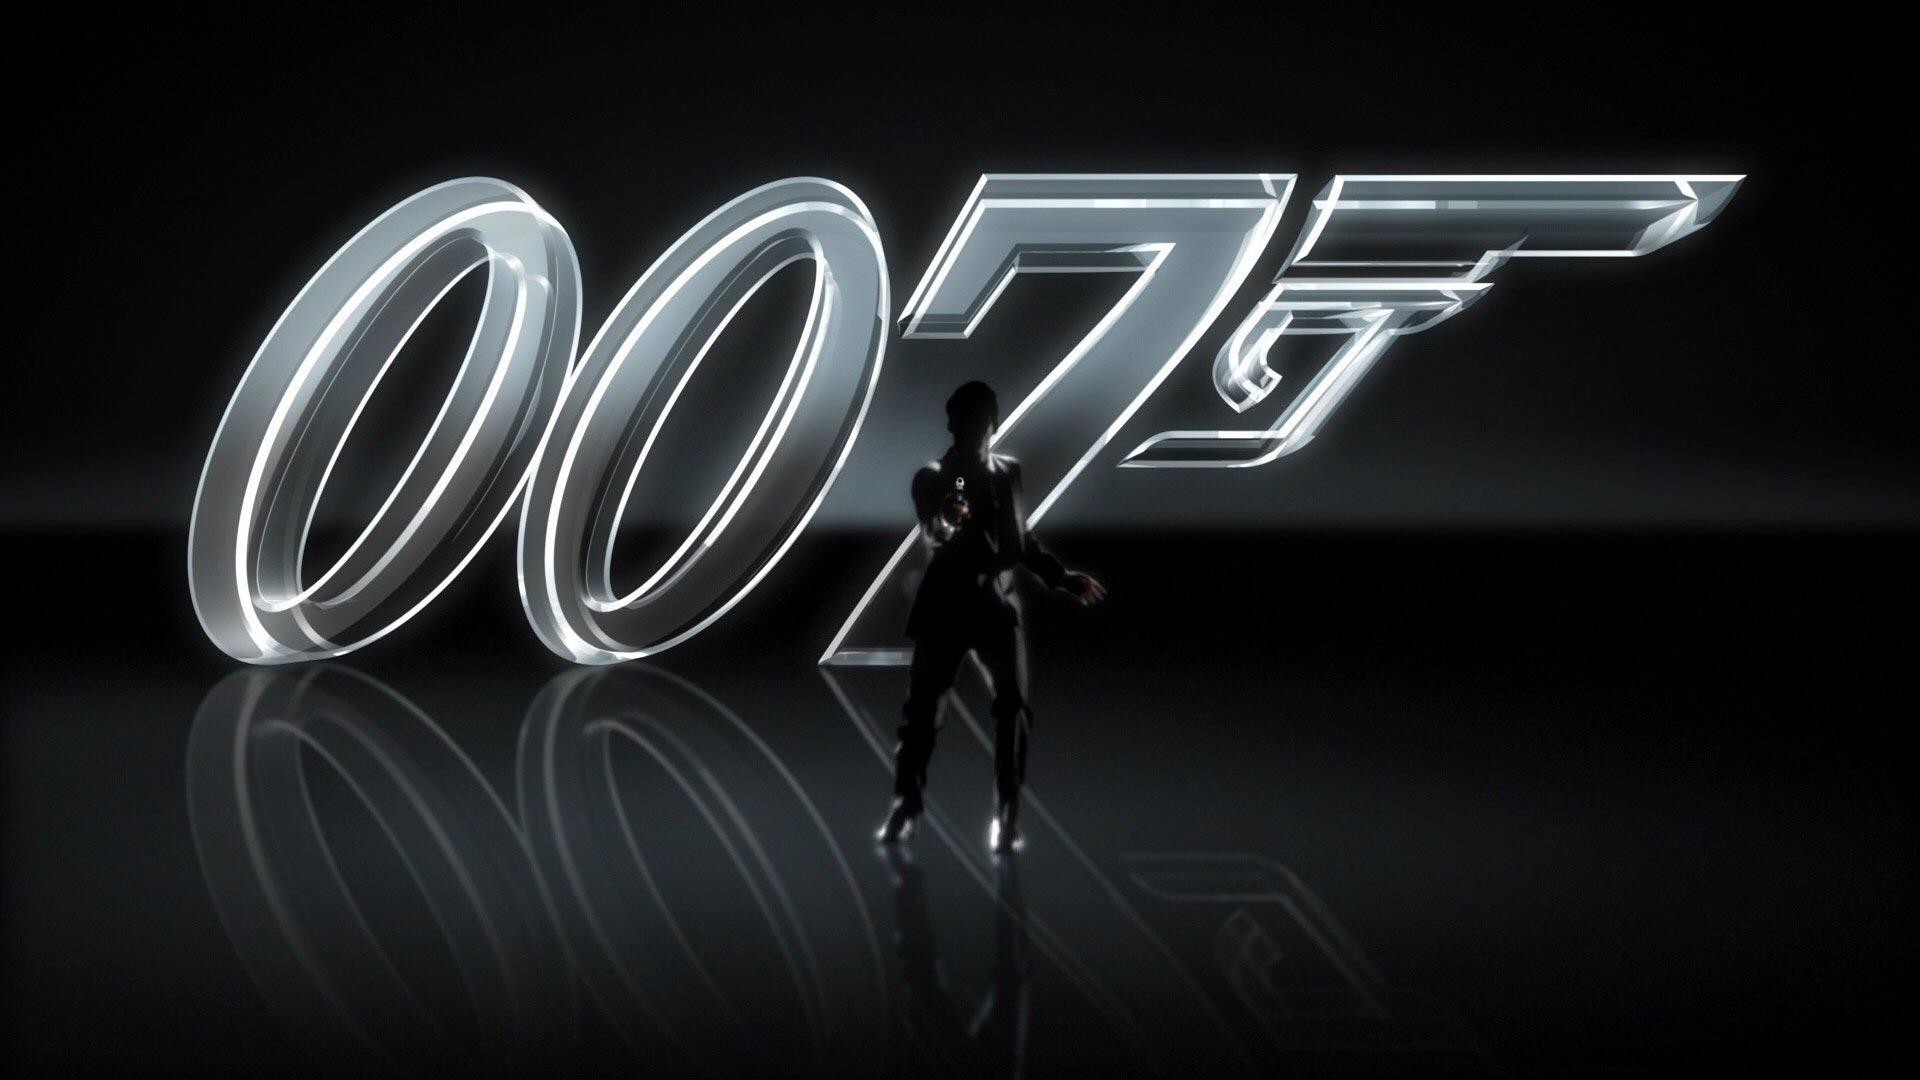 James Bond 007 Logo Images